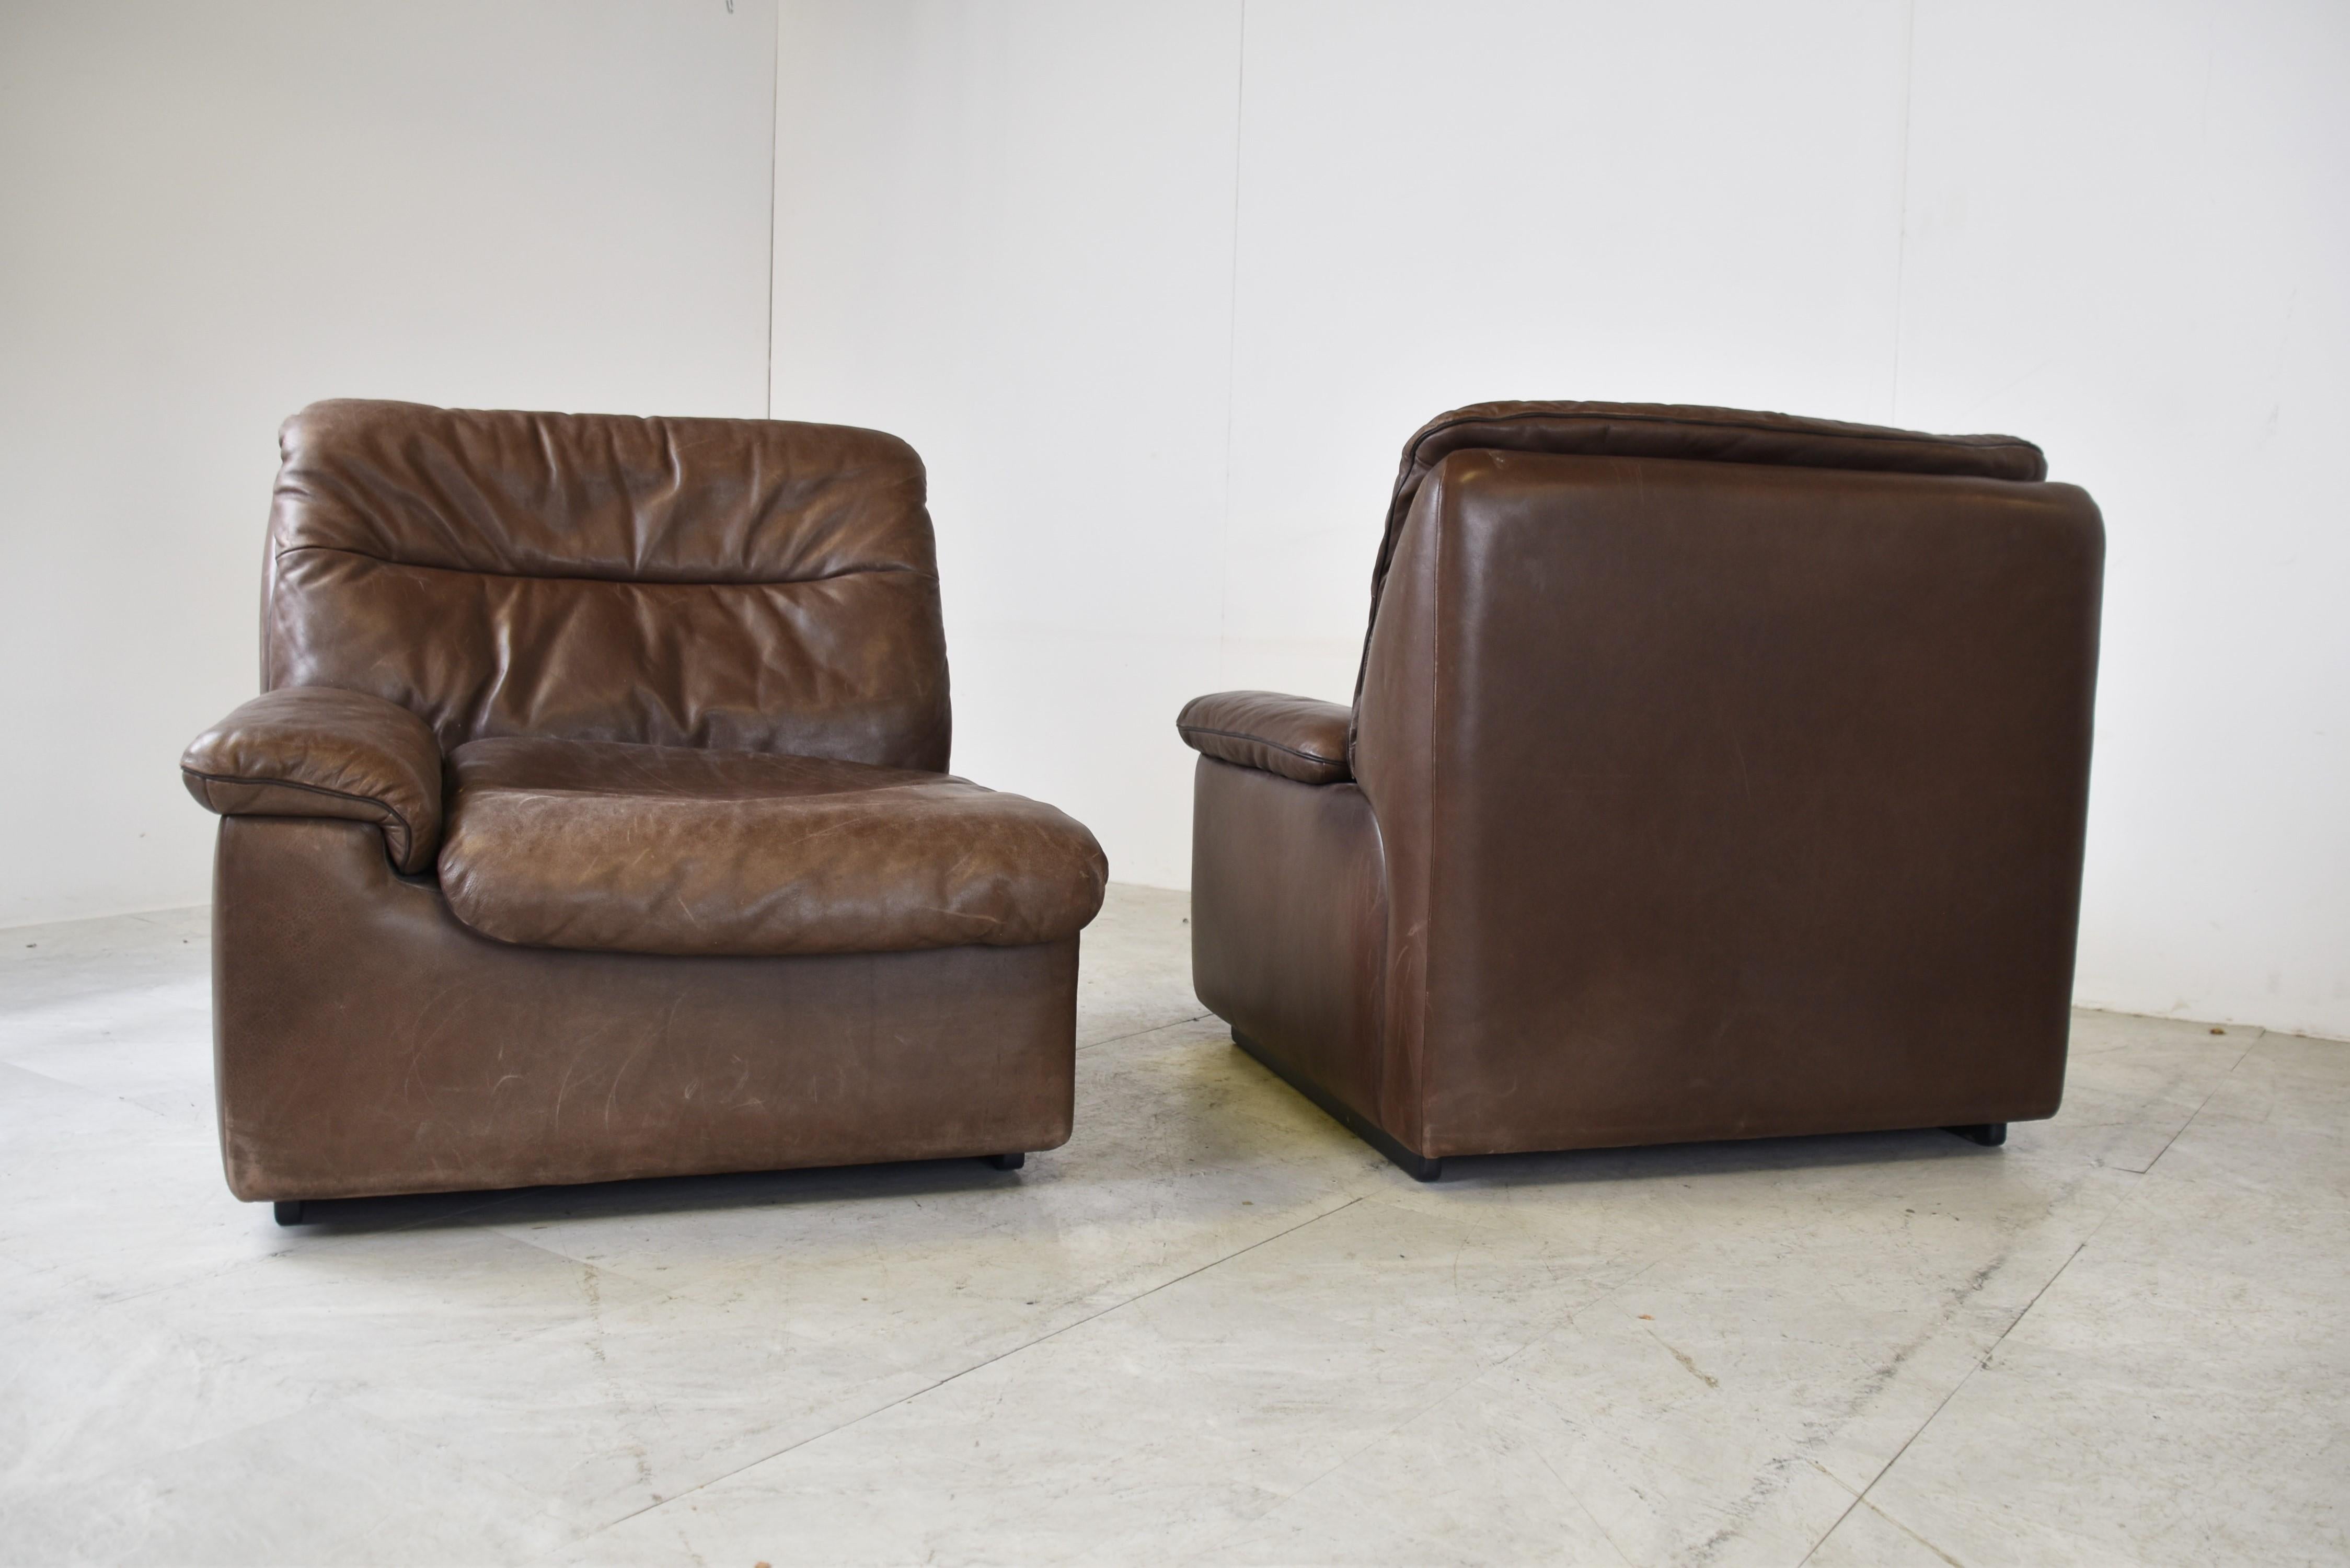 Sofa aus der Mitte des Jahrhunderts aus braunem Leder von Desede.

Das Set besteht aus einer dreisitzigen Bank und einer zweisitzigen Bank.

Schönes Qualitätsleder, wie man es von Desede erwarten würde. 

Guter Originalzustand, mit schöner